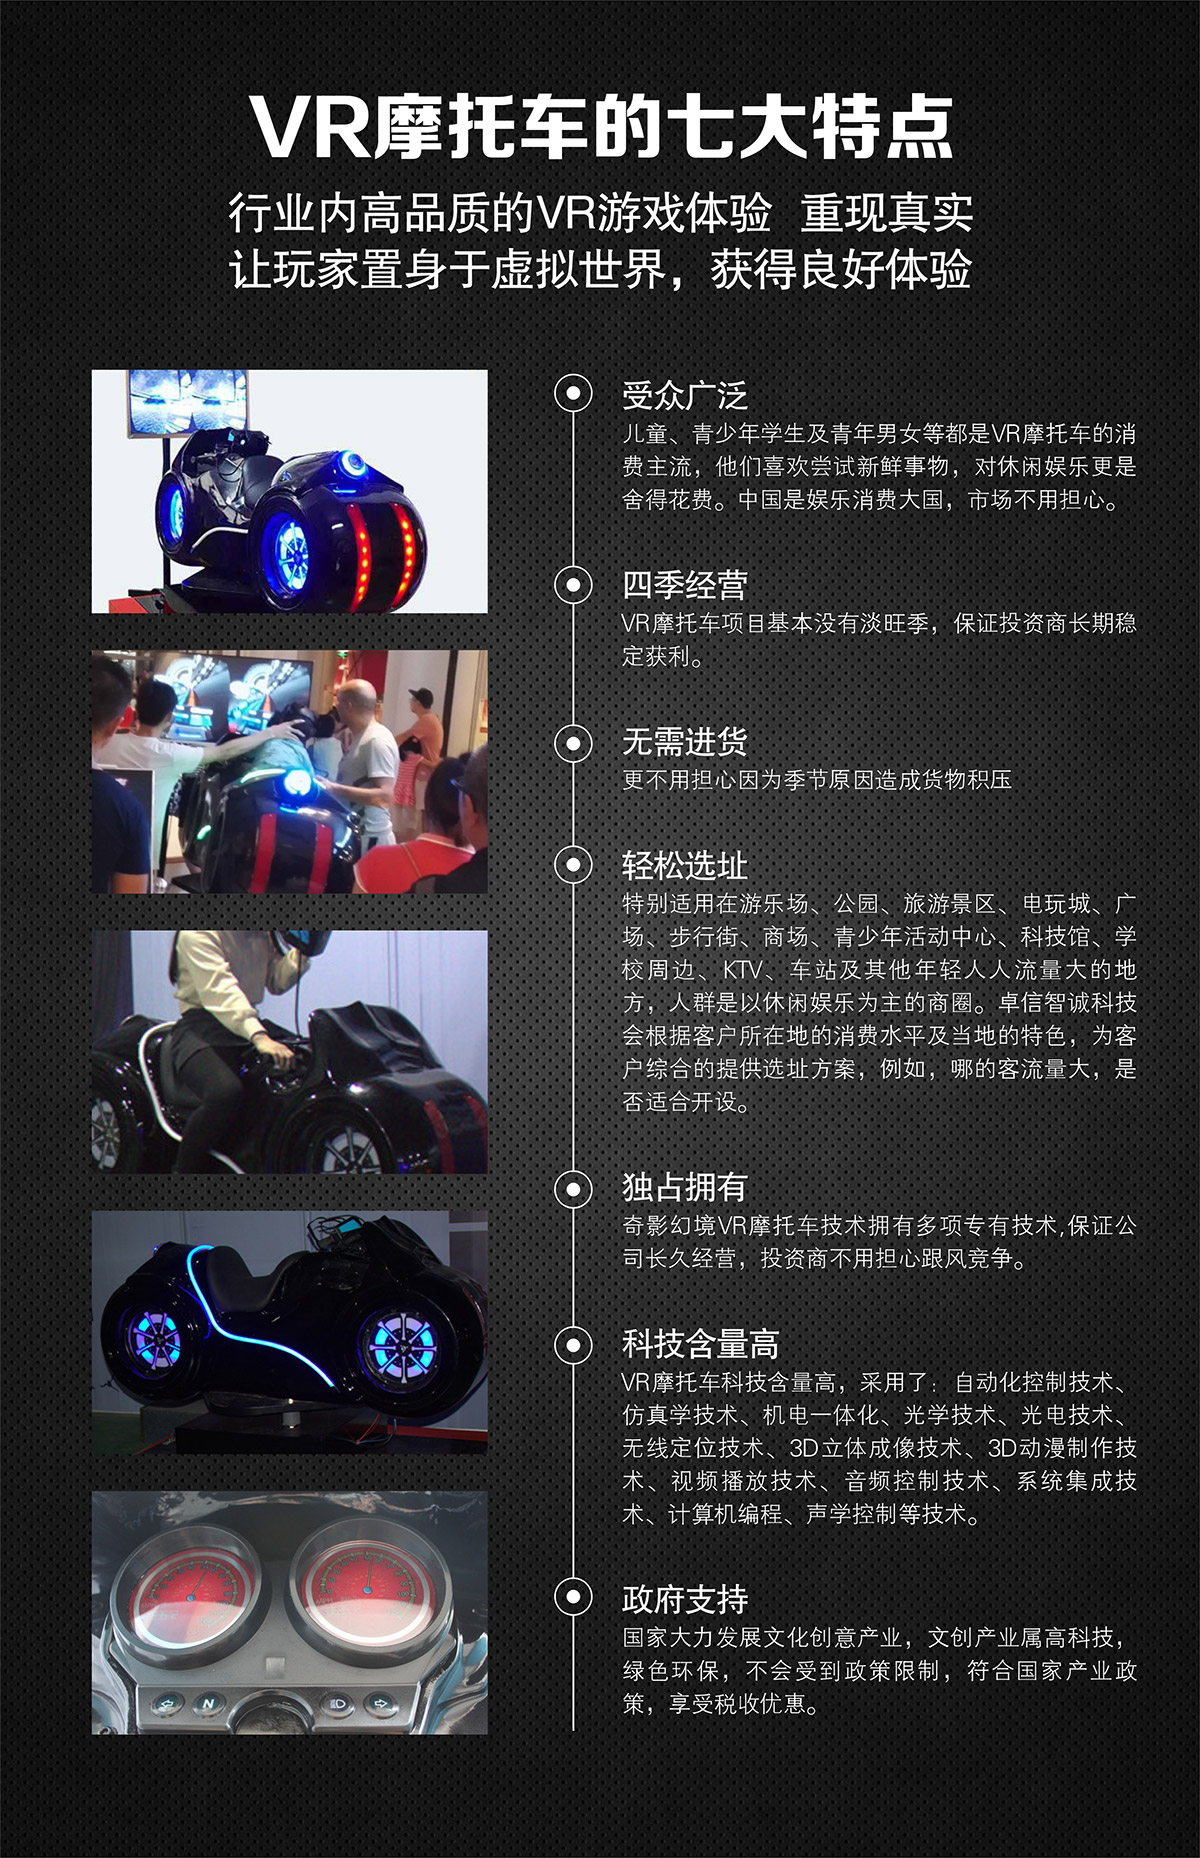 07-奇影幻境VR摩托车特点高品质游戏体验.jpg